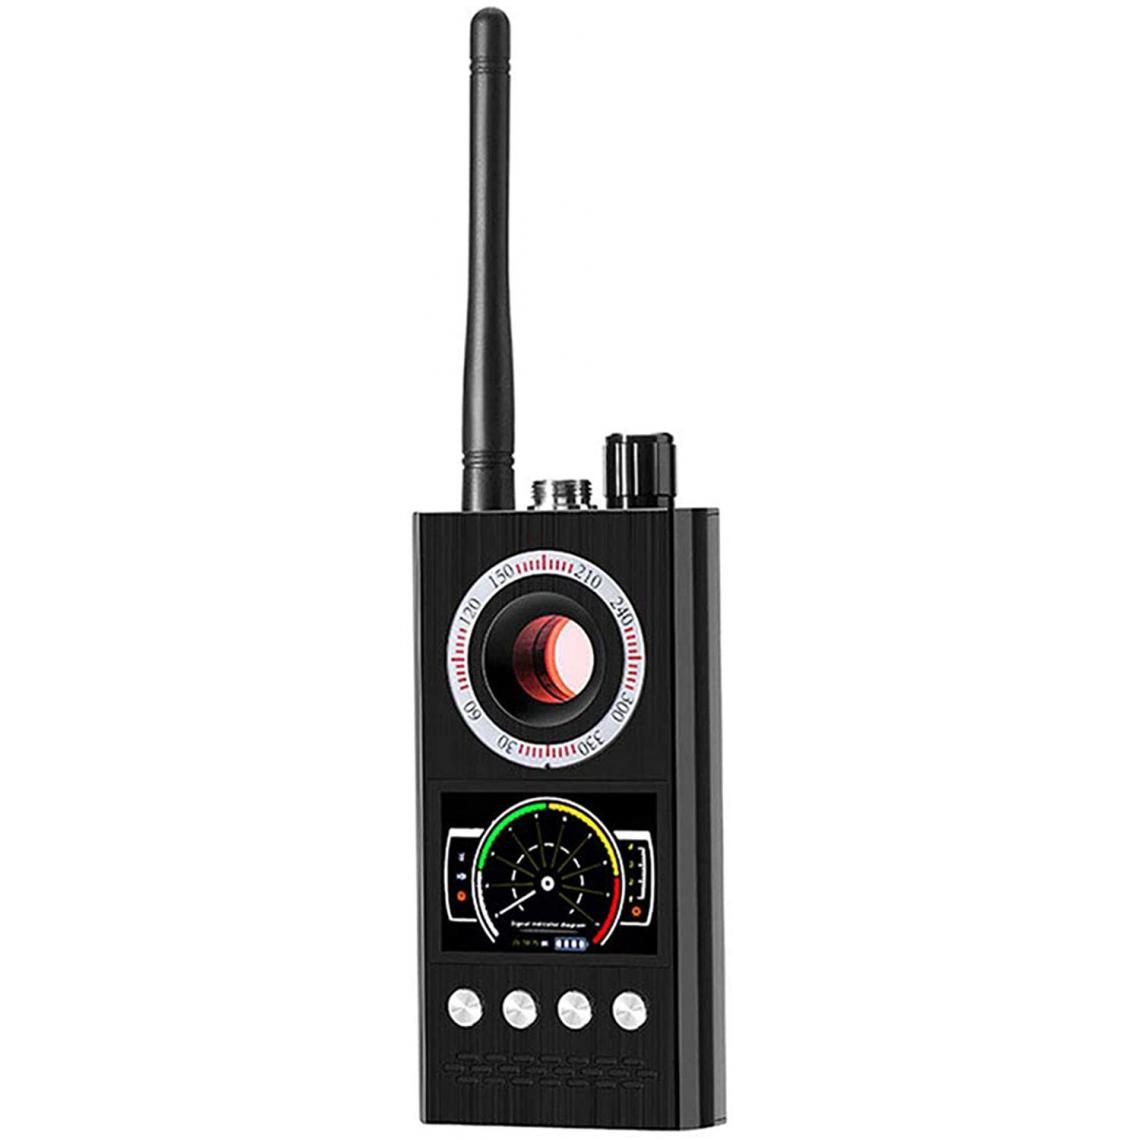 Chrono - Détecteur de caméra espion multifonction, Détecteur de signal RF sans fil Bug professionnel GSM GPS Tracker Caméra cachée Dispositif d'écouteï¼noirï¼ - Autres accessoires smartphone